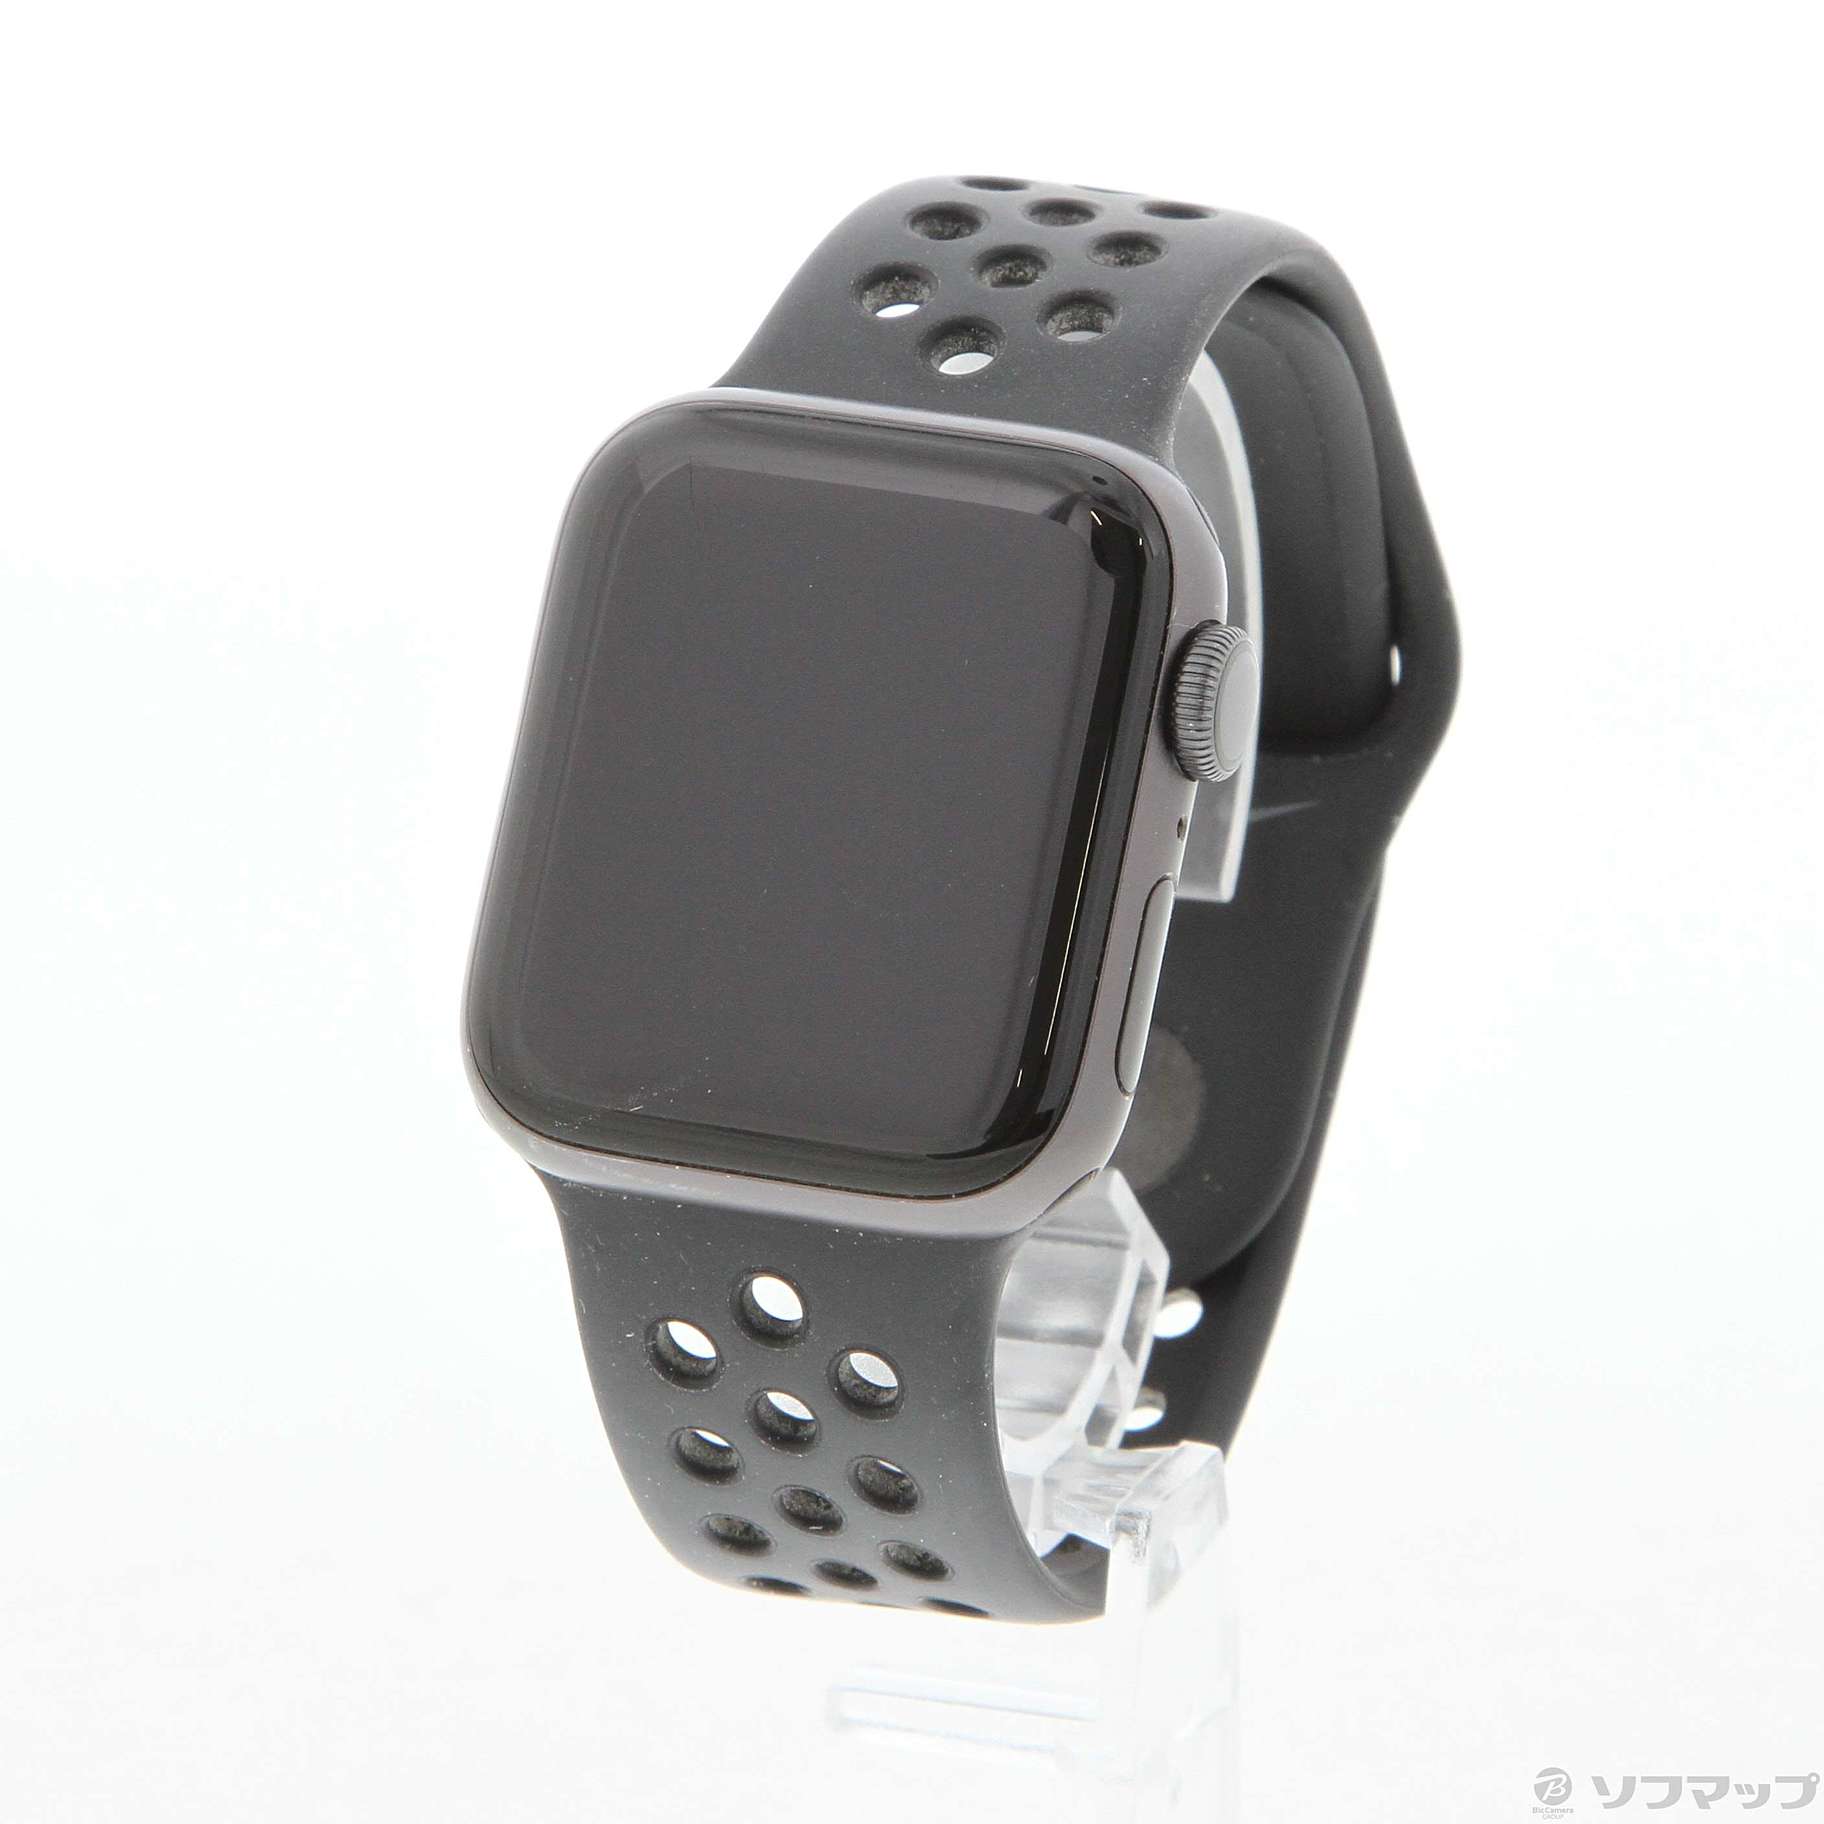 Apple Watch 5  Nike   40mm